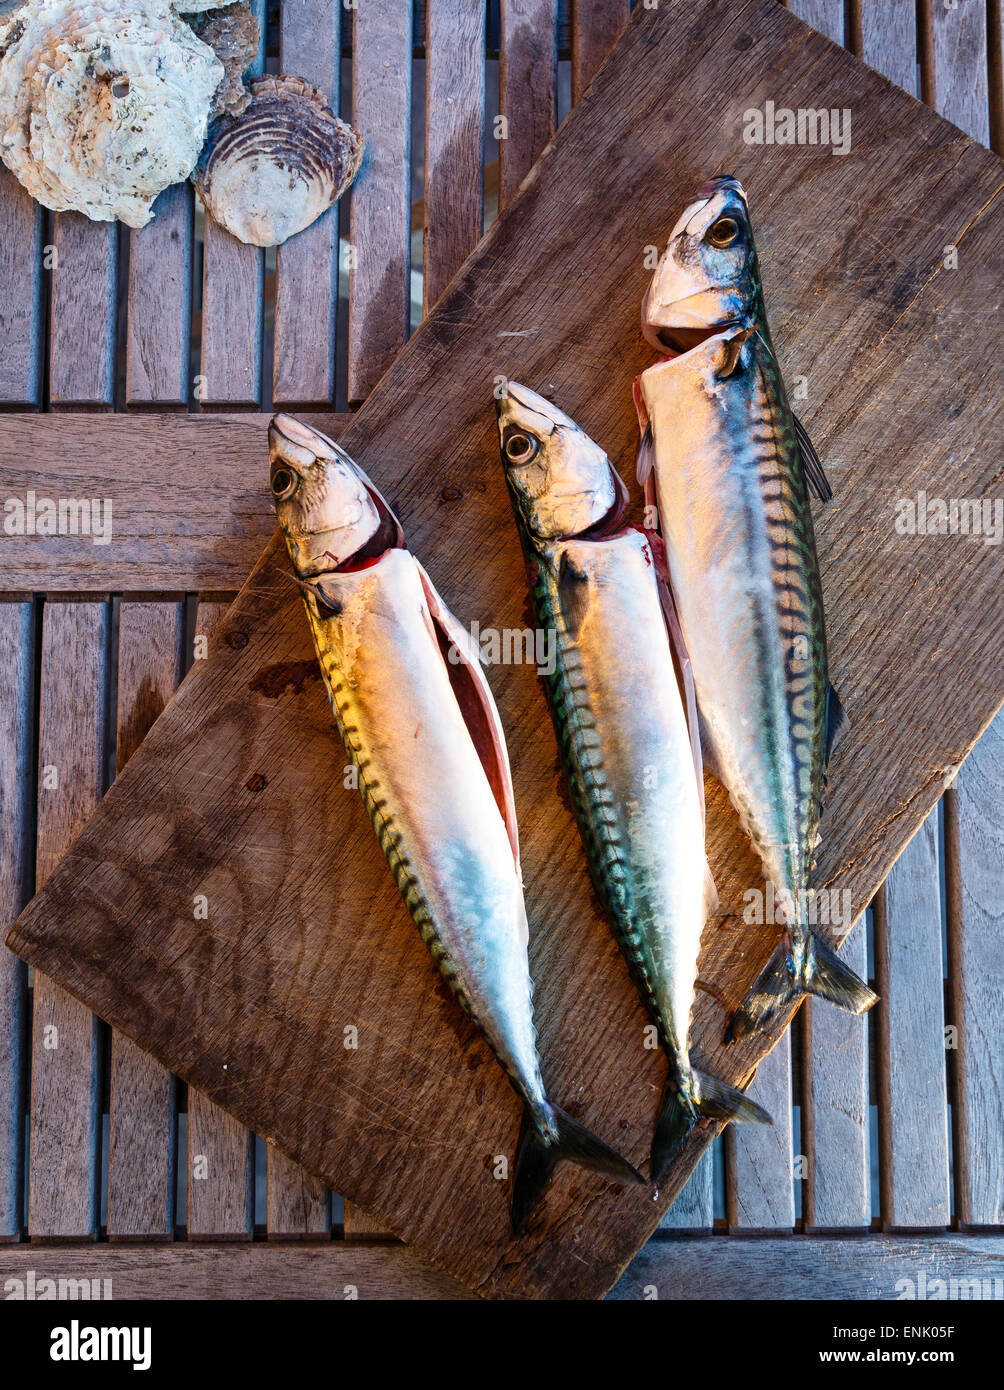 Makrele Fisch, Grebbestad, Bohuslan Region, Westküste Schweden, Skandinavien, Europa Stockfoto